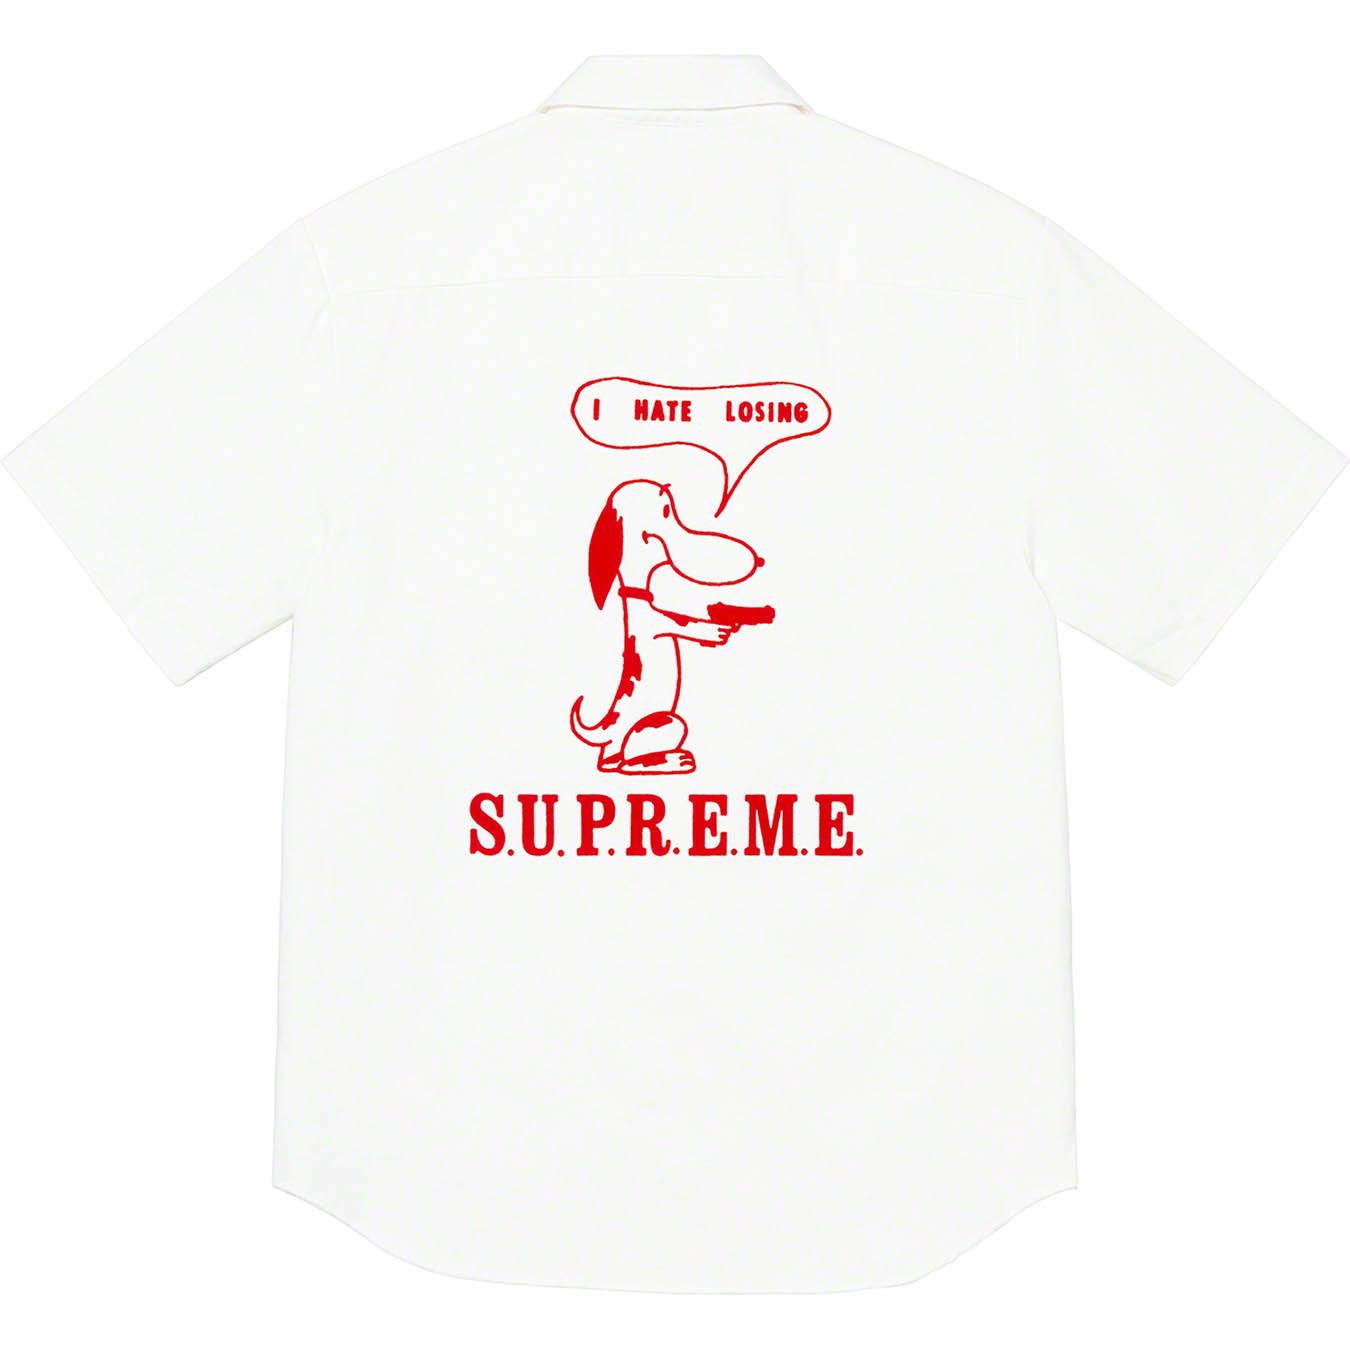 Supreme Dog S/S Work Shirt